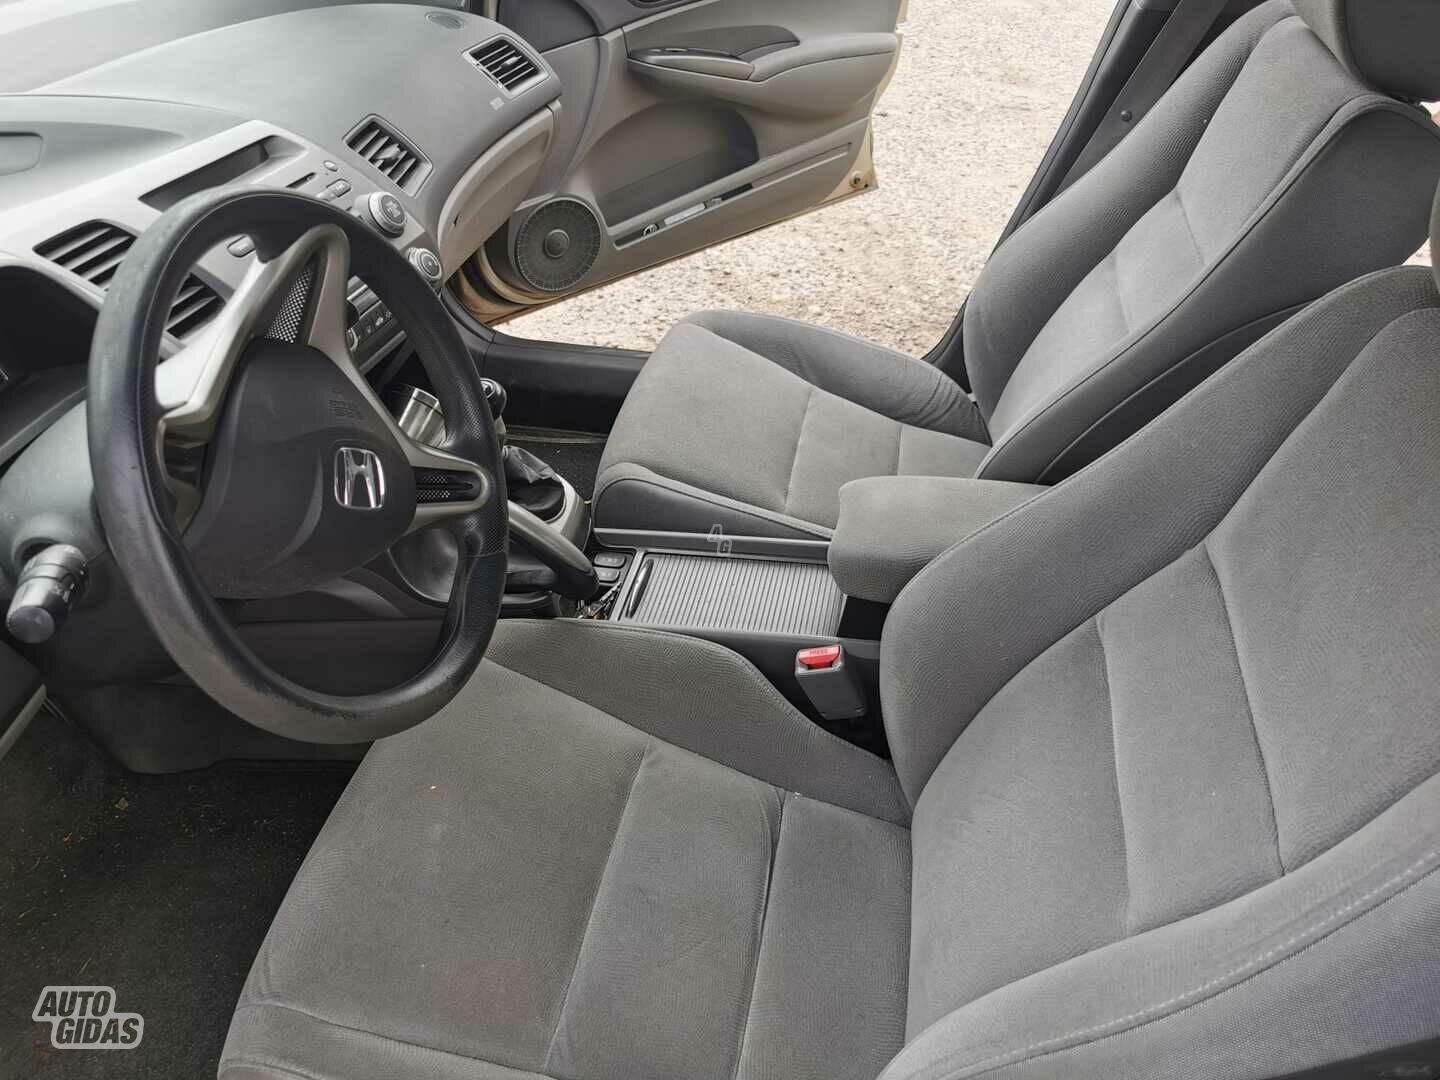 Honda Civic Comfort 2008 г